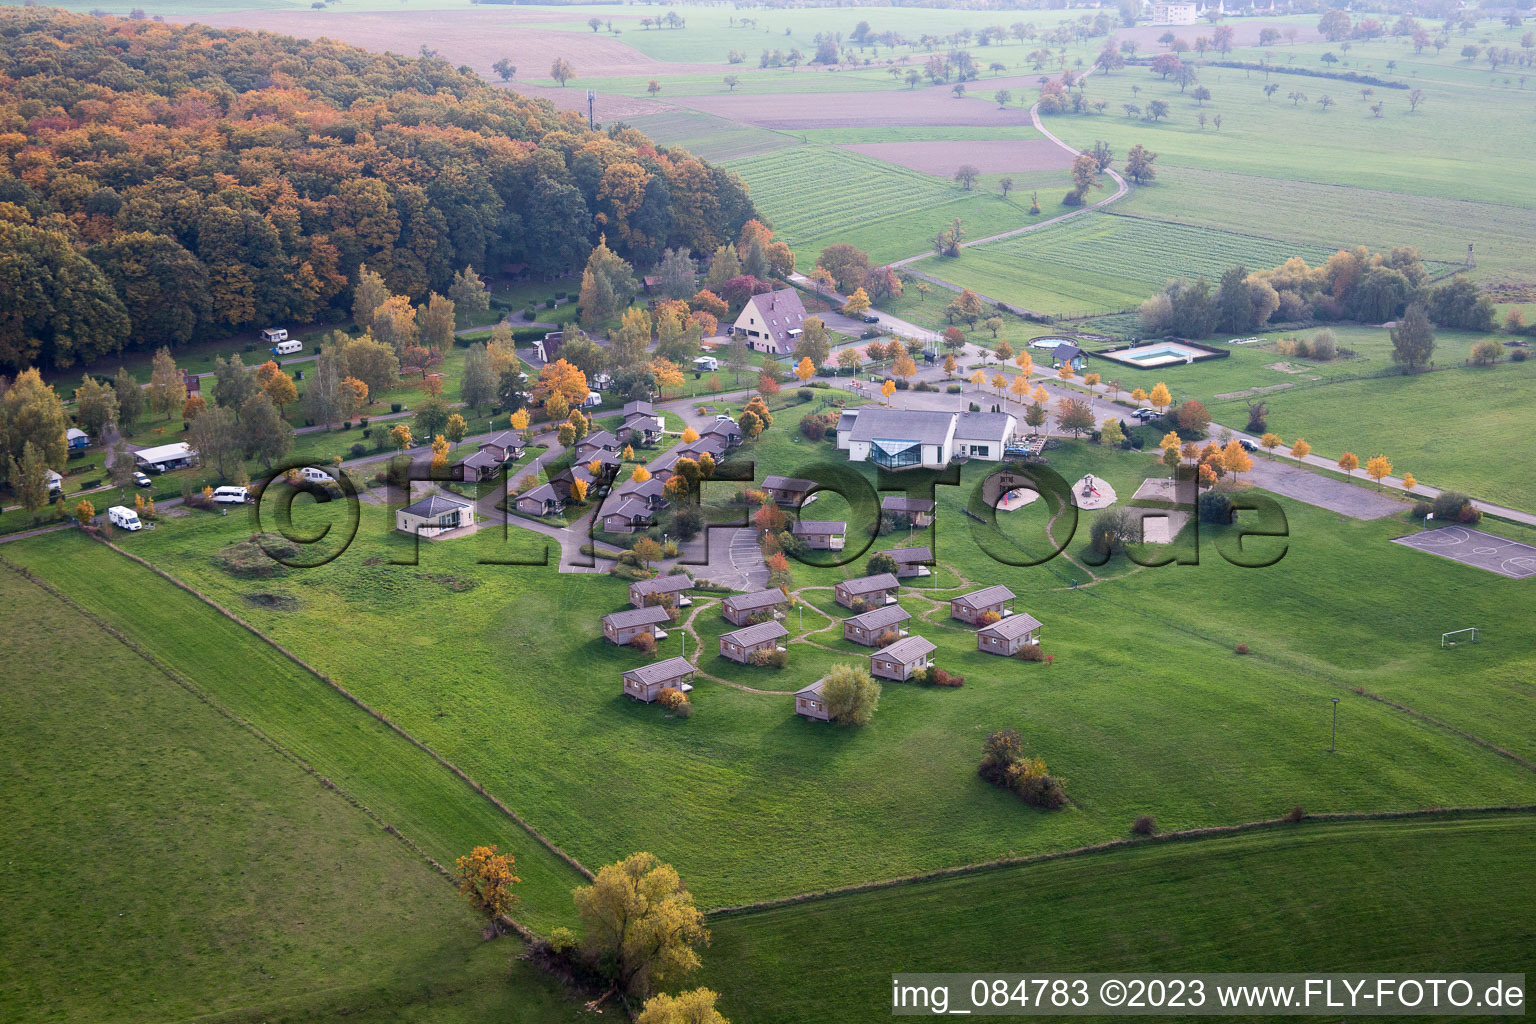 Vue aérienne de Camping de l'Oasis à Oberbronn dans le département Bas Rhin, France